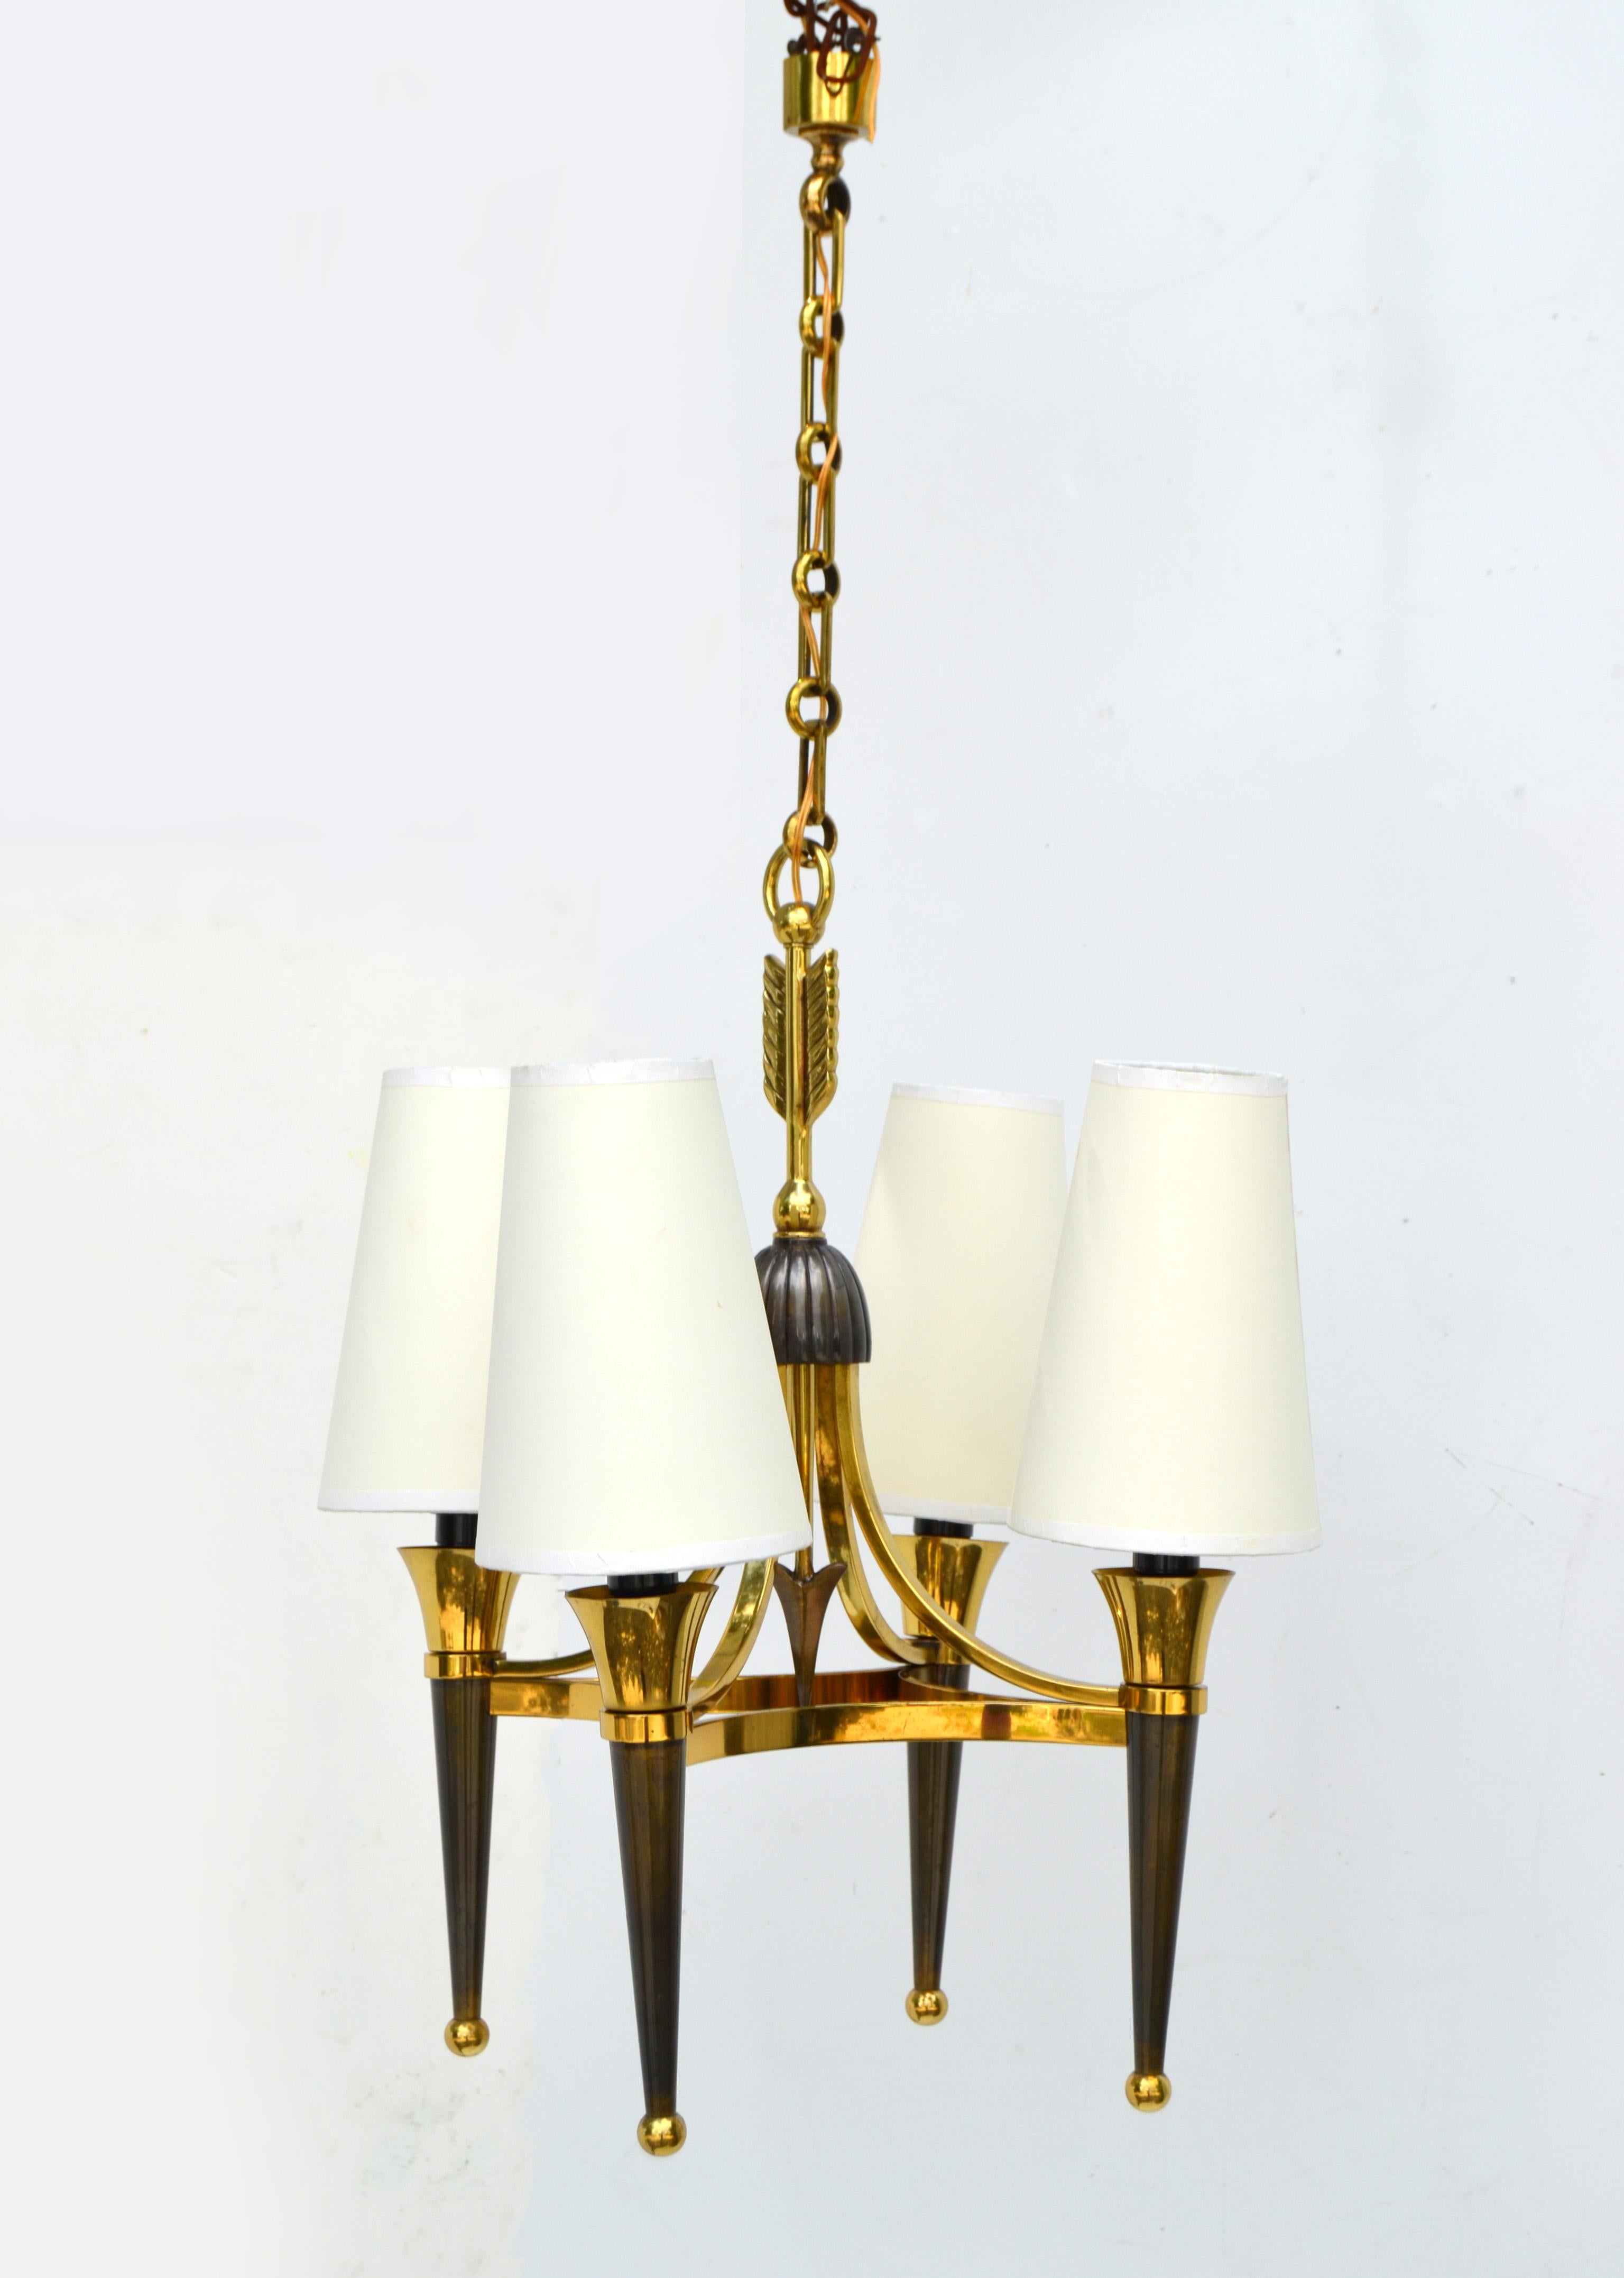 andre brass cone pendant light